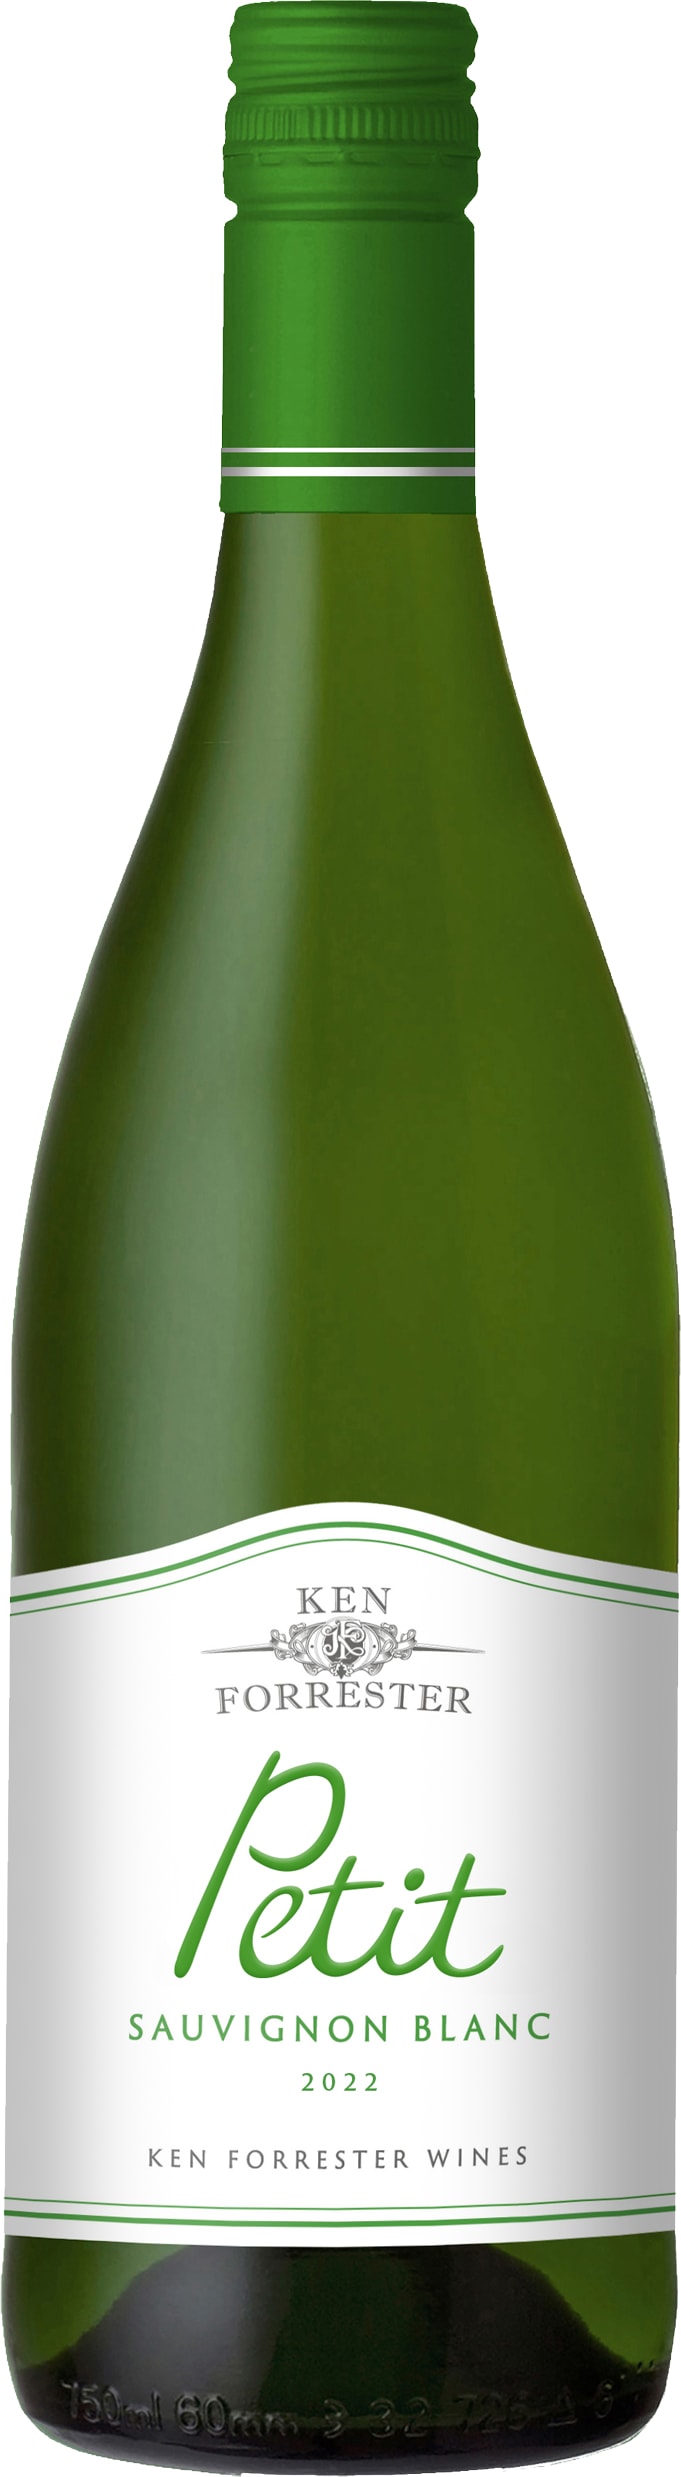 Ken Forrester Wines Petit Sauvignon Blanc 2023 75cl - Buy Ken Forrester Wines Wines from GREAT WINES DIRECT wine shop